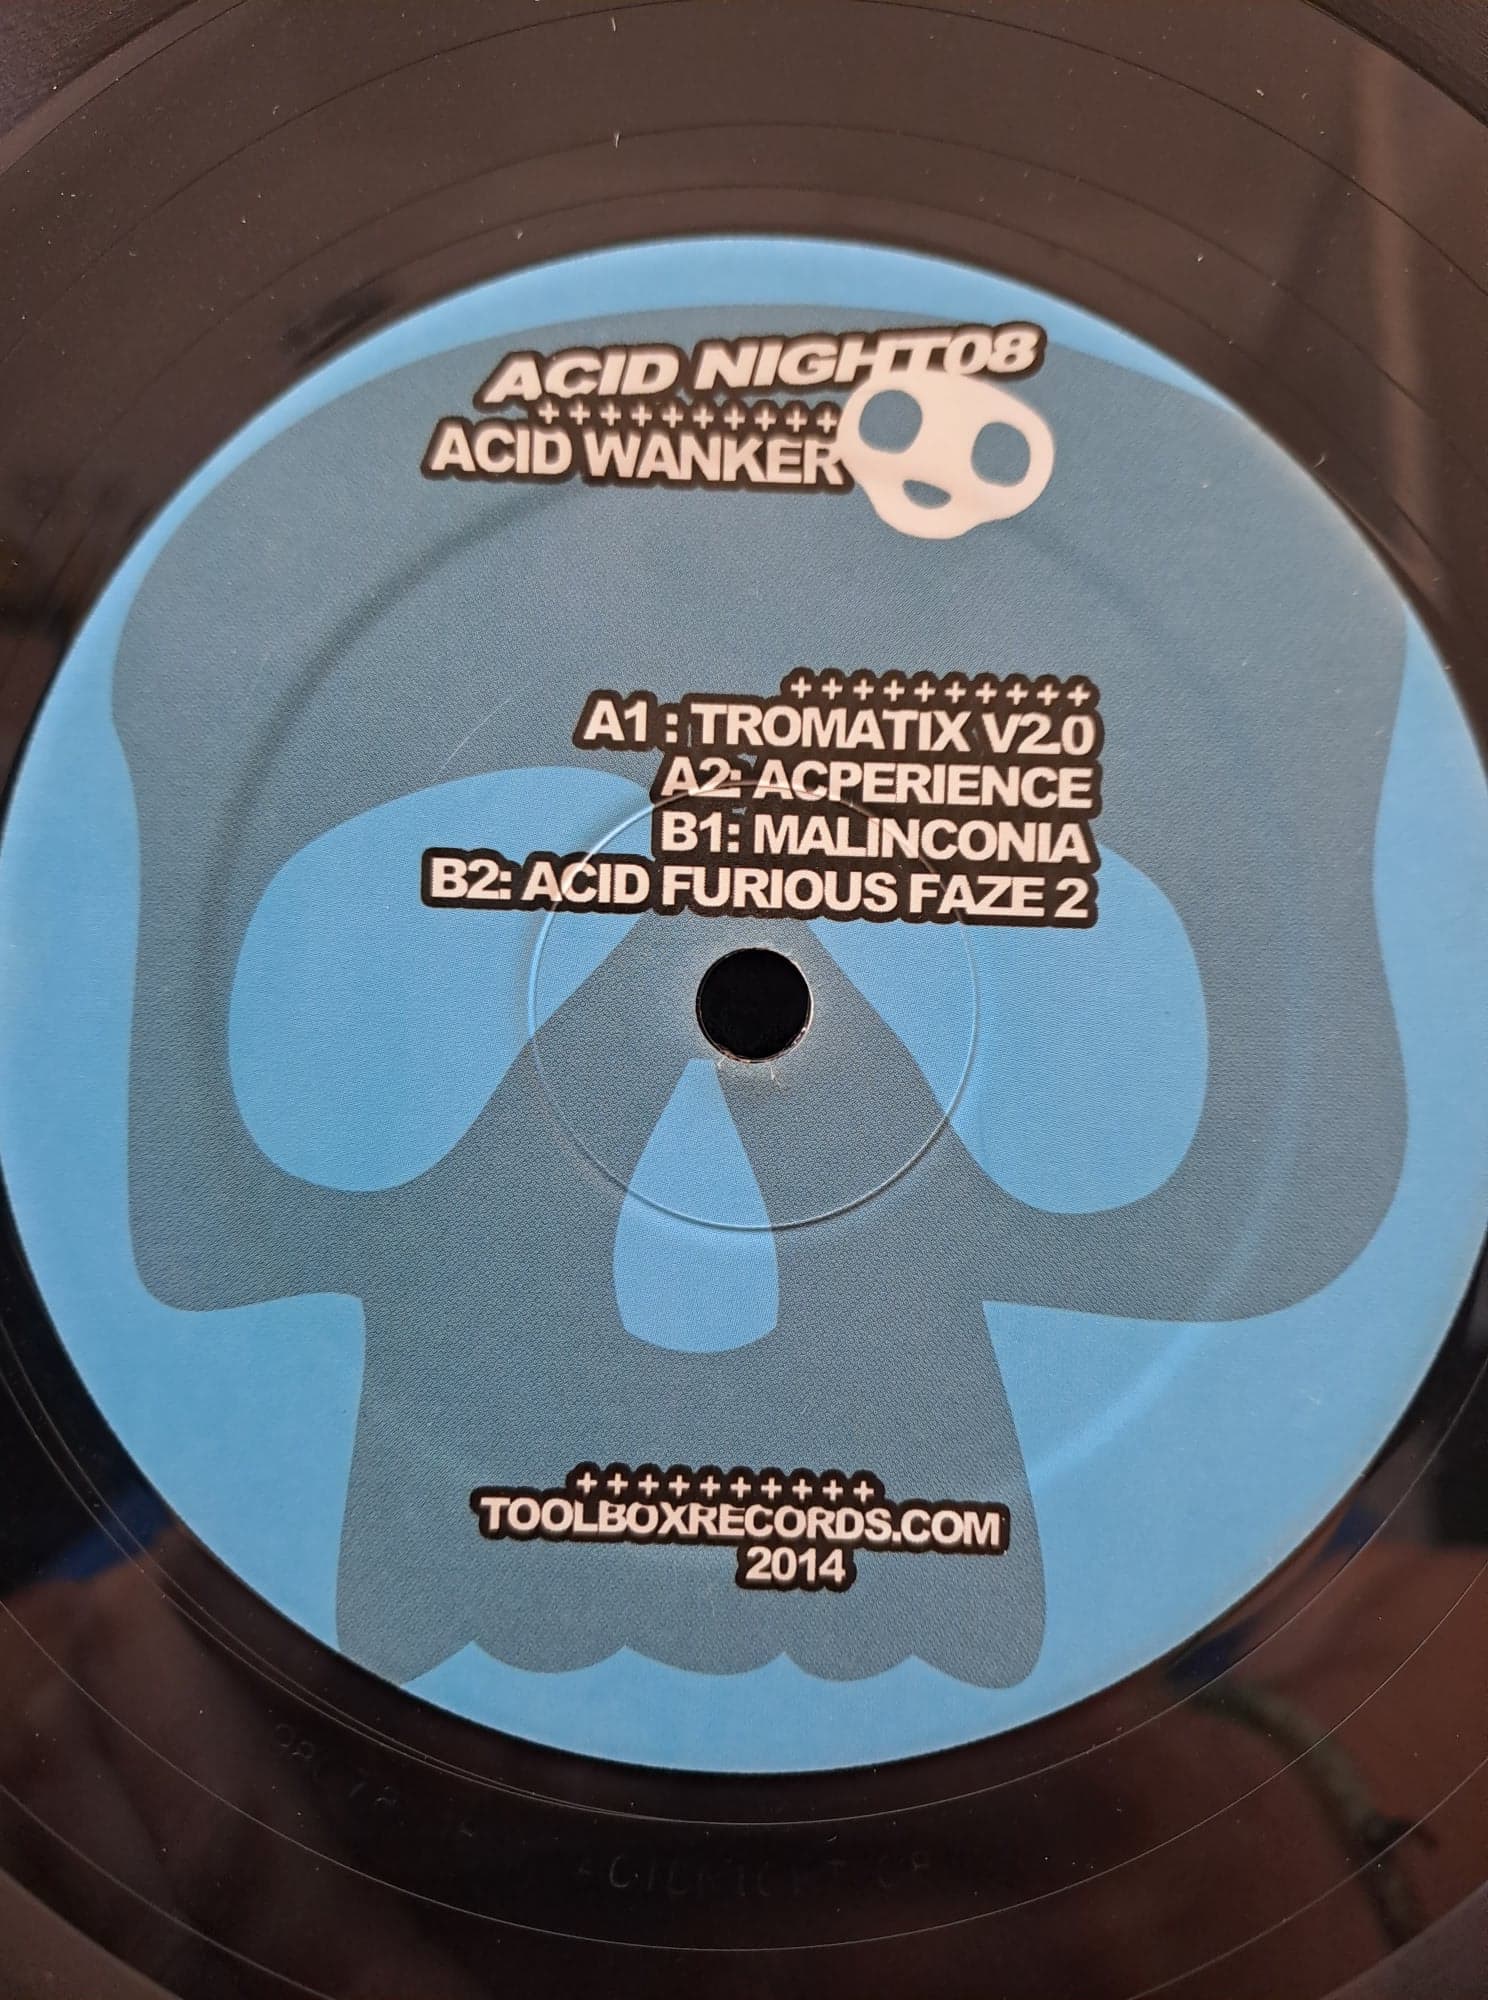 Acid Night 08 - vinyle acid